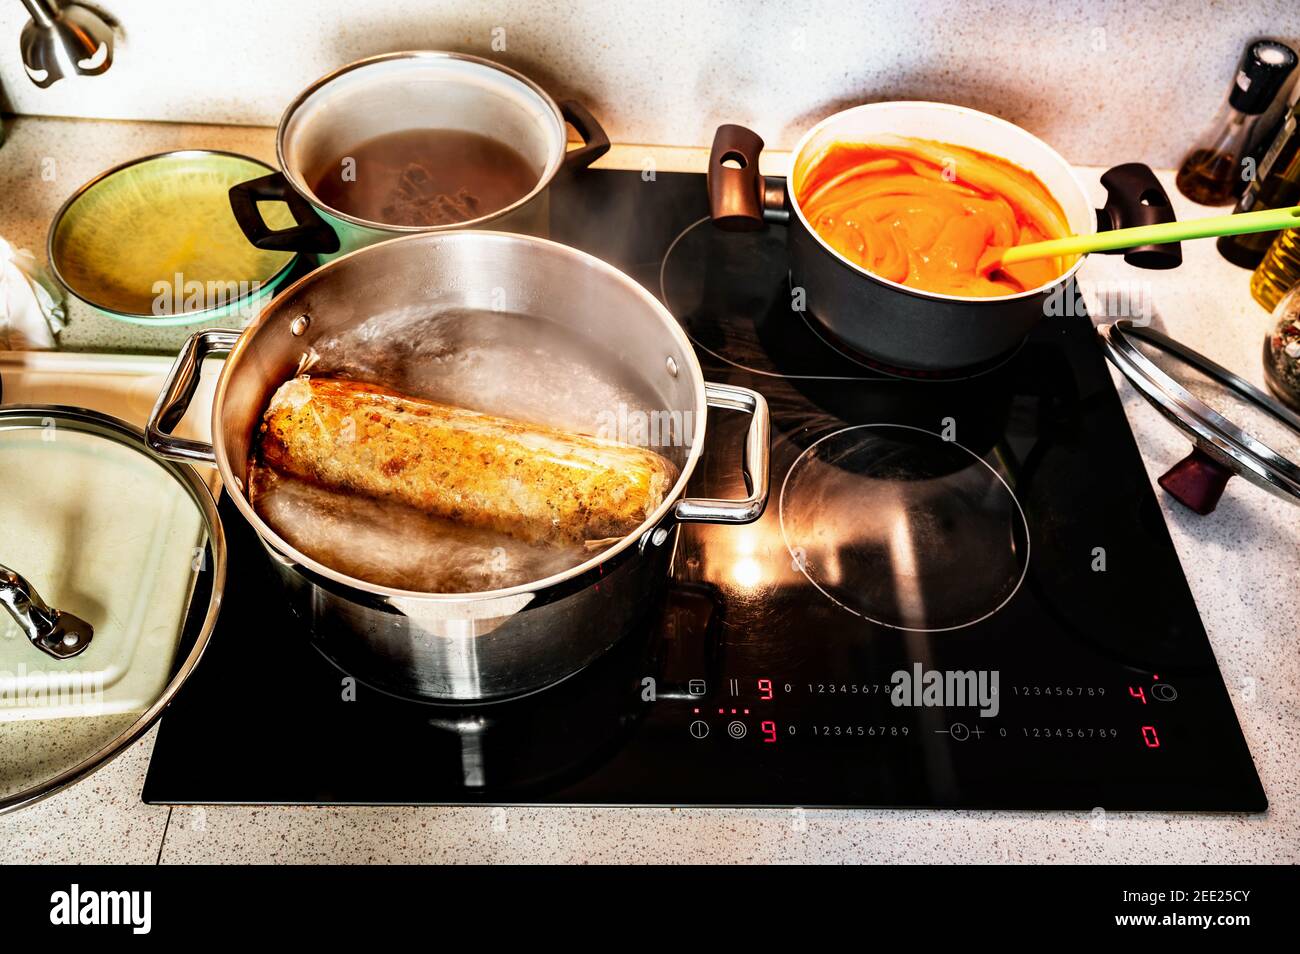 Preparatio Essen auf heißer Küche Keramik-Kochfeld. Knödel in kochendem Wasser im großen Topf, Deckel, Tomatensauce in kleinem Topf mit Löffel, Rindfleisch in Brühe. Stockfoto